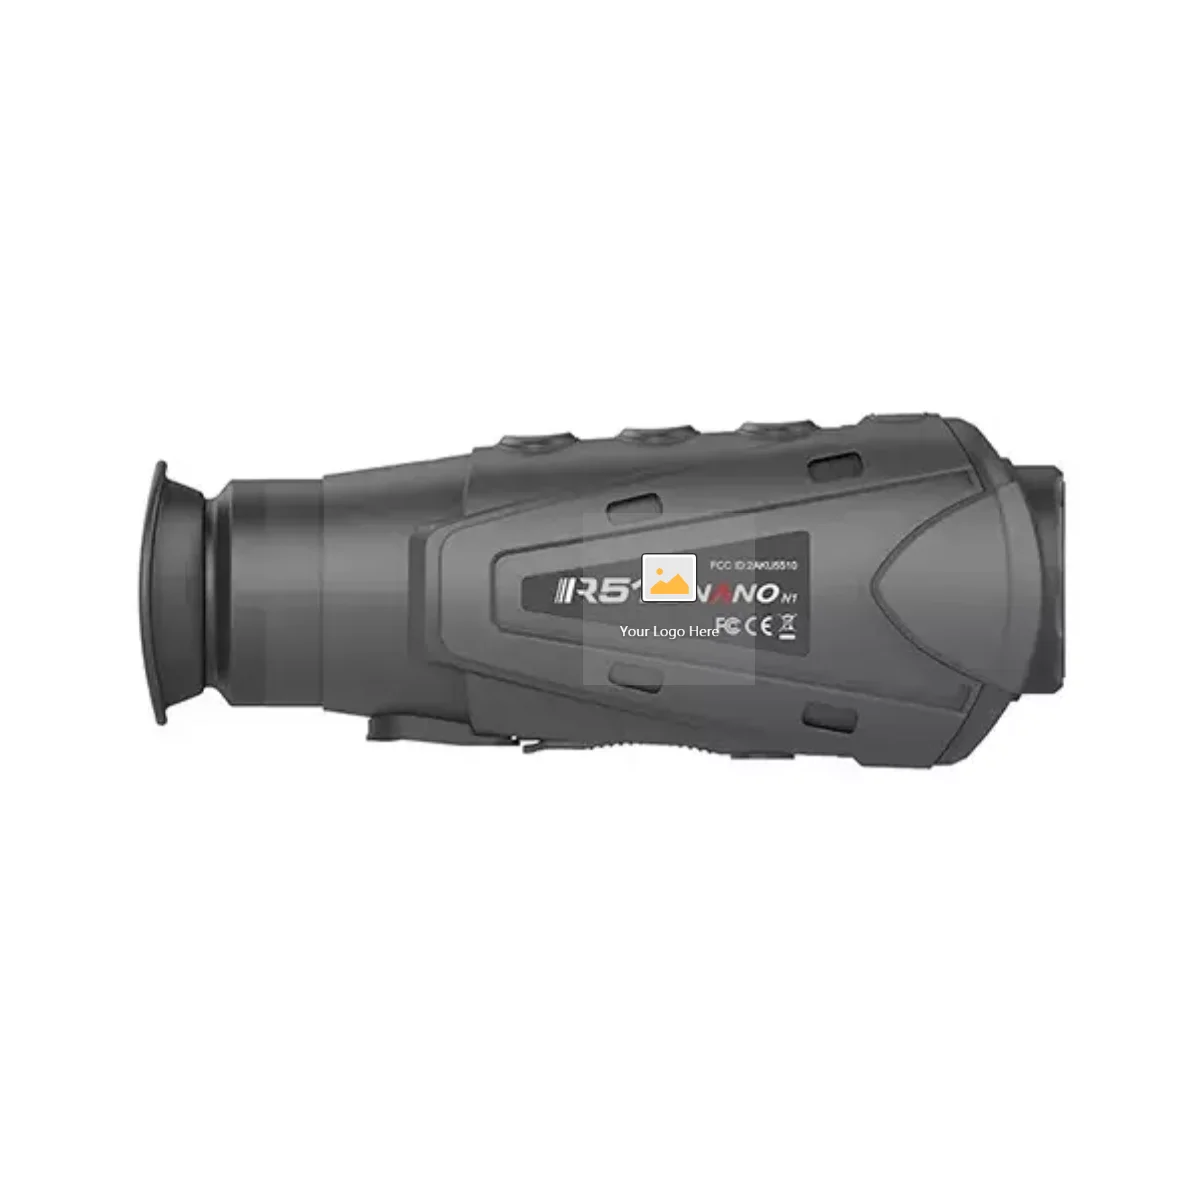 

Новинка, тепловизор IR510-N1, Монокуляр, ночная тепловизионная камера на большие расстояния, прицел для охоты, для безопасности патрулирования